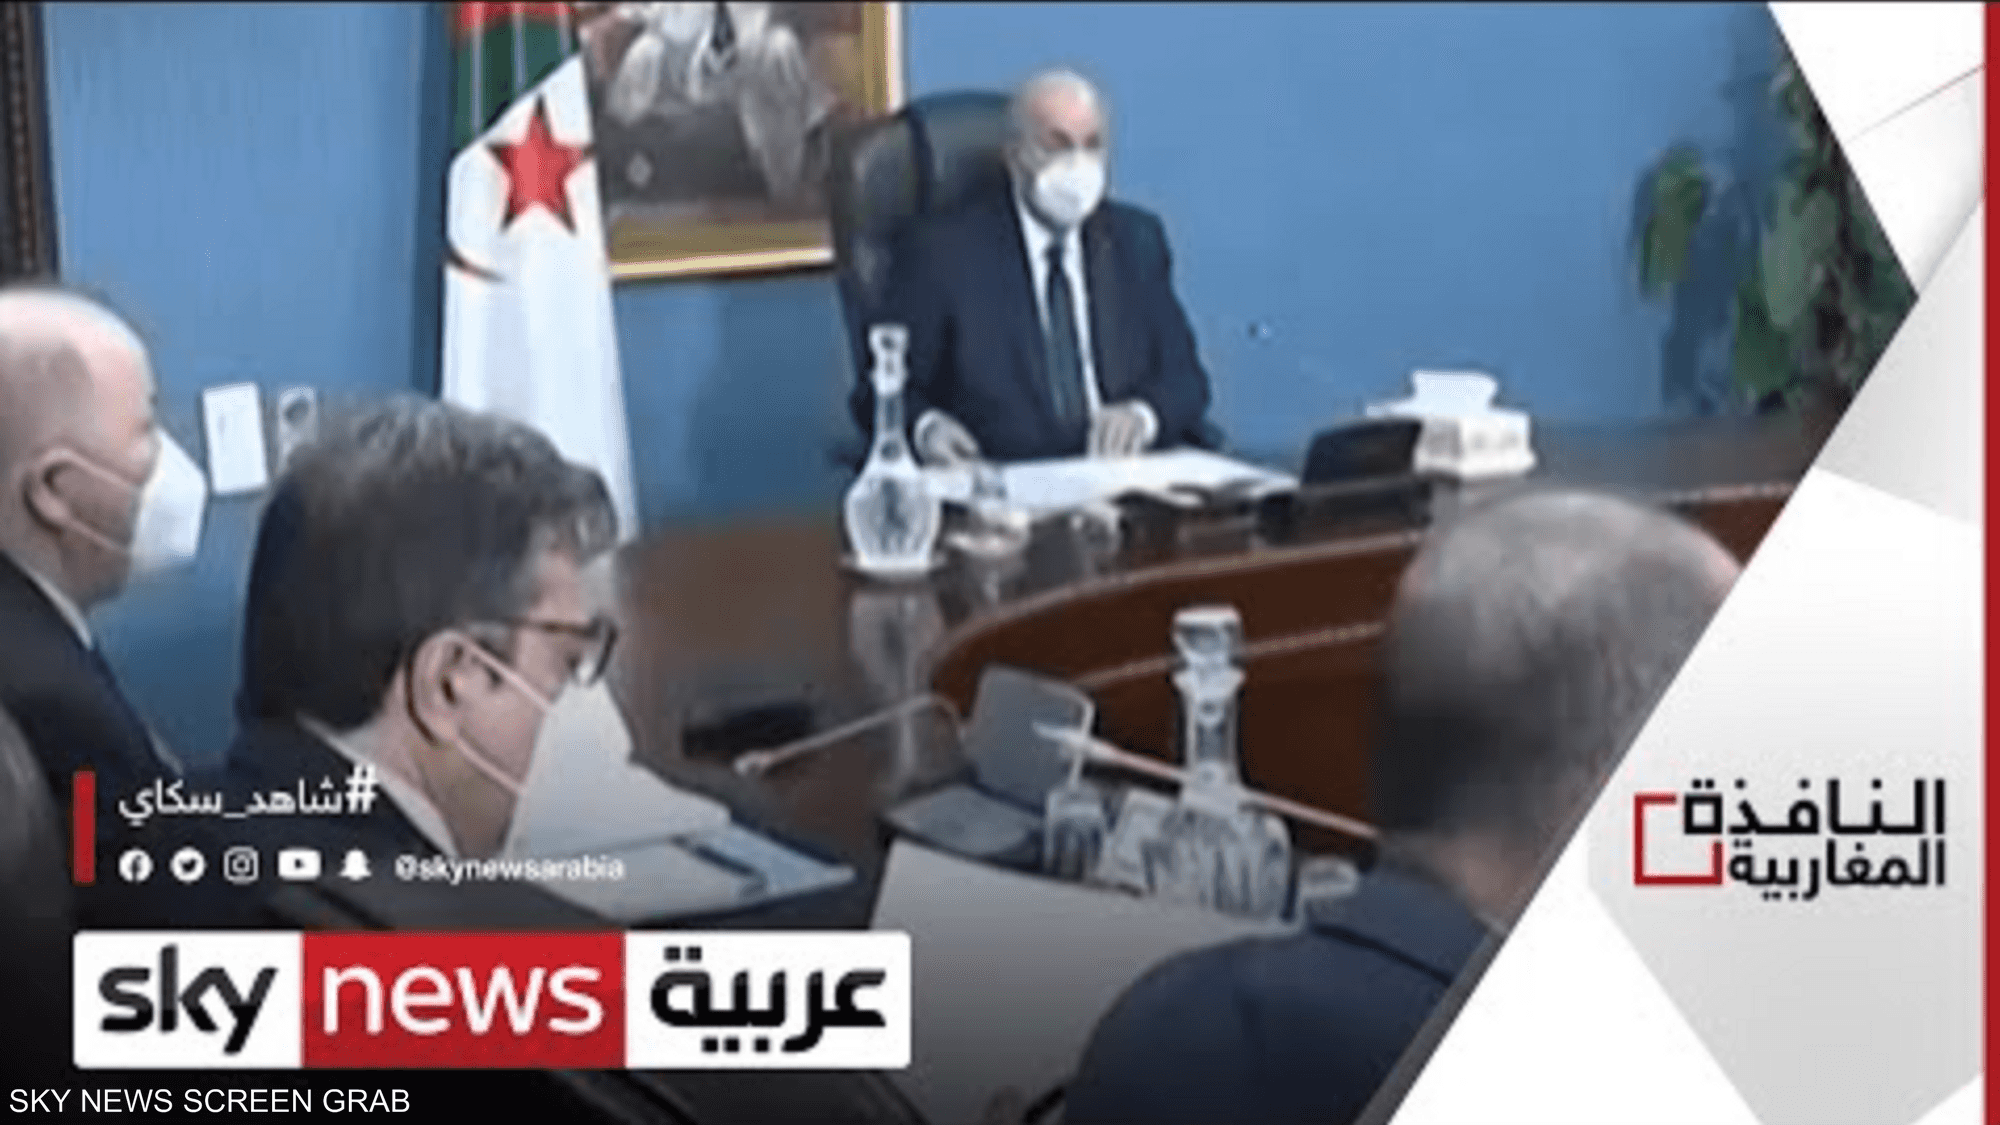 لقاء مرتقب بين الرئيس الجزائري والقوى السياسية